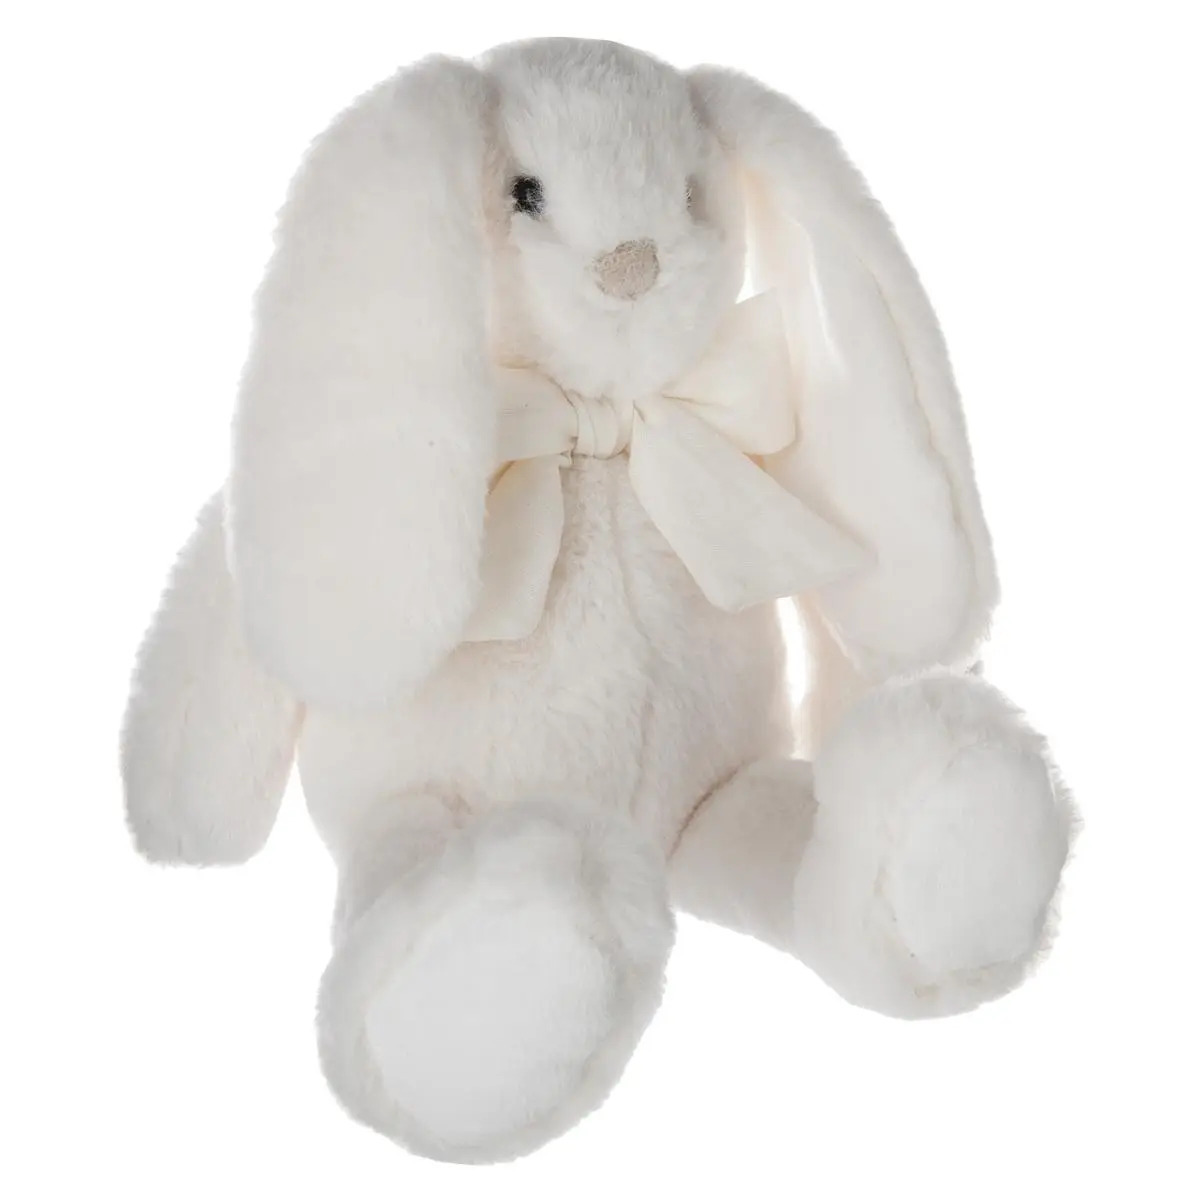 Knuffeldier konijn met strikje zachte pluche stof fluffy knuffels creme wit 30 cm